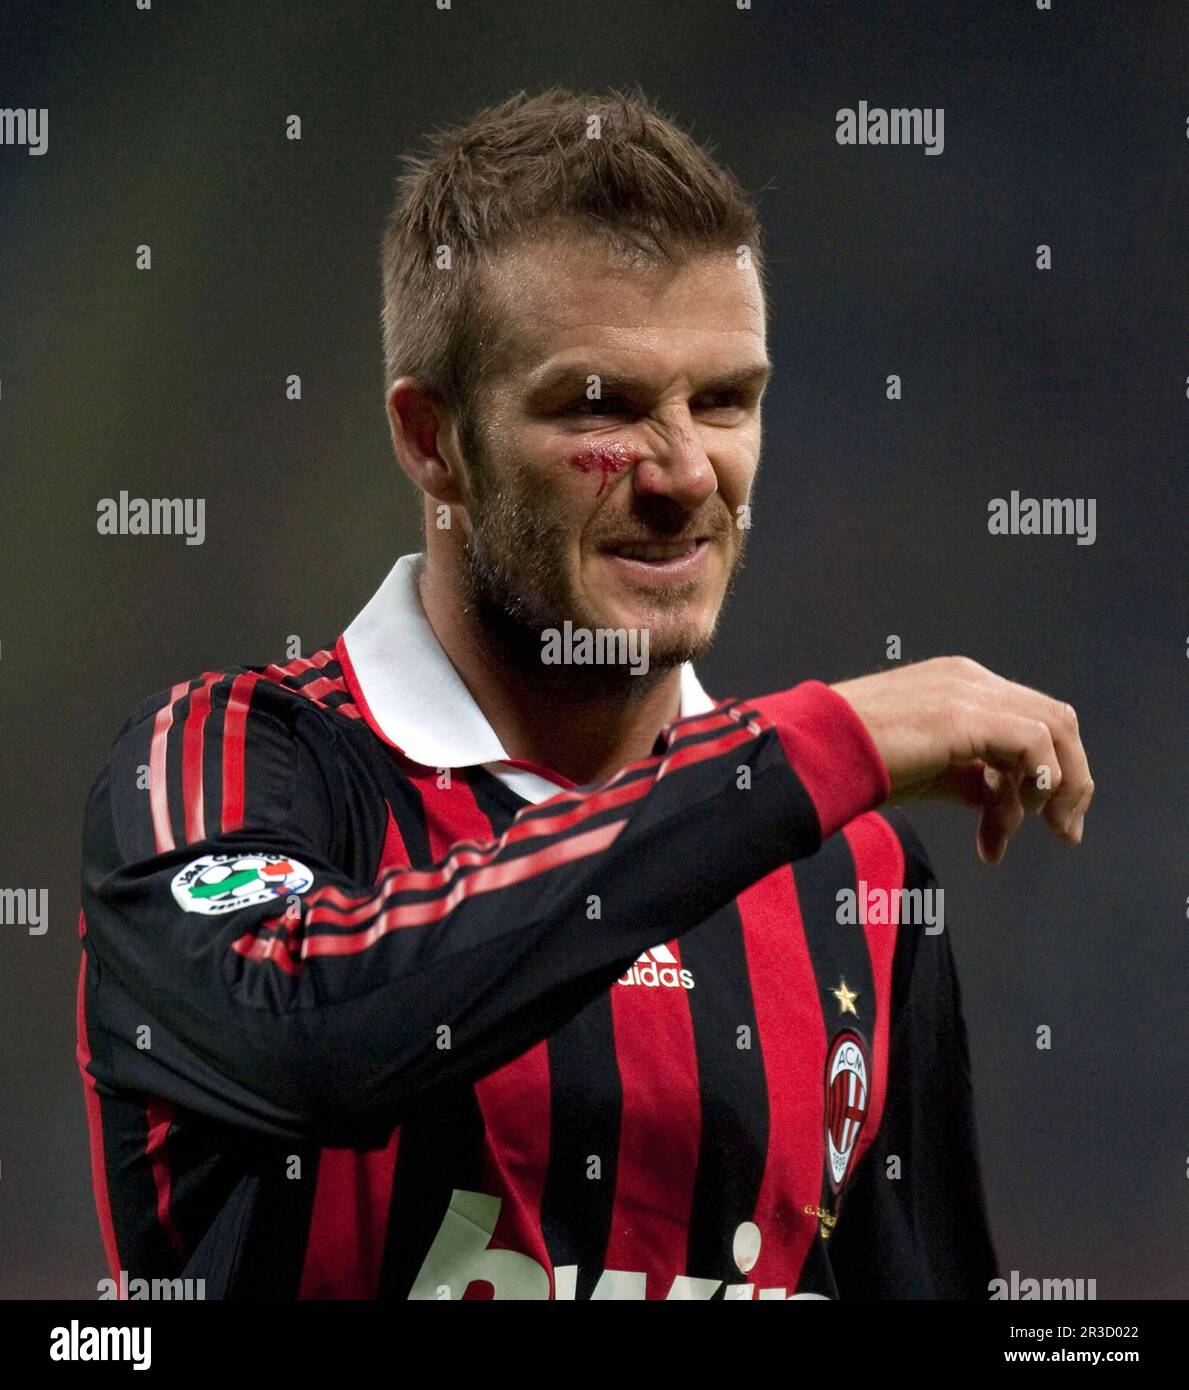 Mailand AC Mailand gegen Chievo (1-0) Serie A 14/03/2010David Beckham (Mailand) bekommt einen tritt ins Gesicht und muss während des Sieges behandelt werden Stockfoto